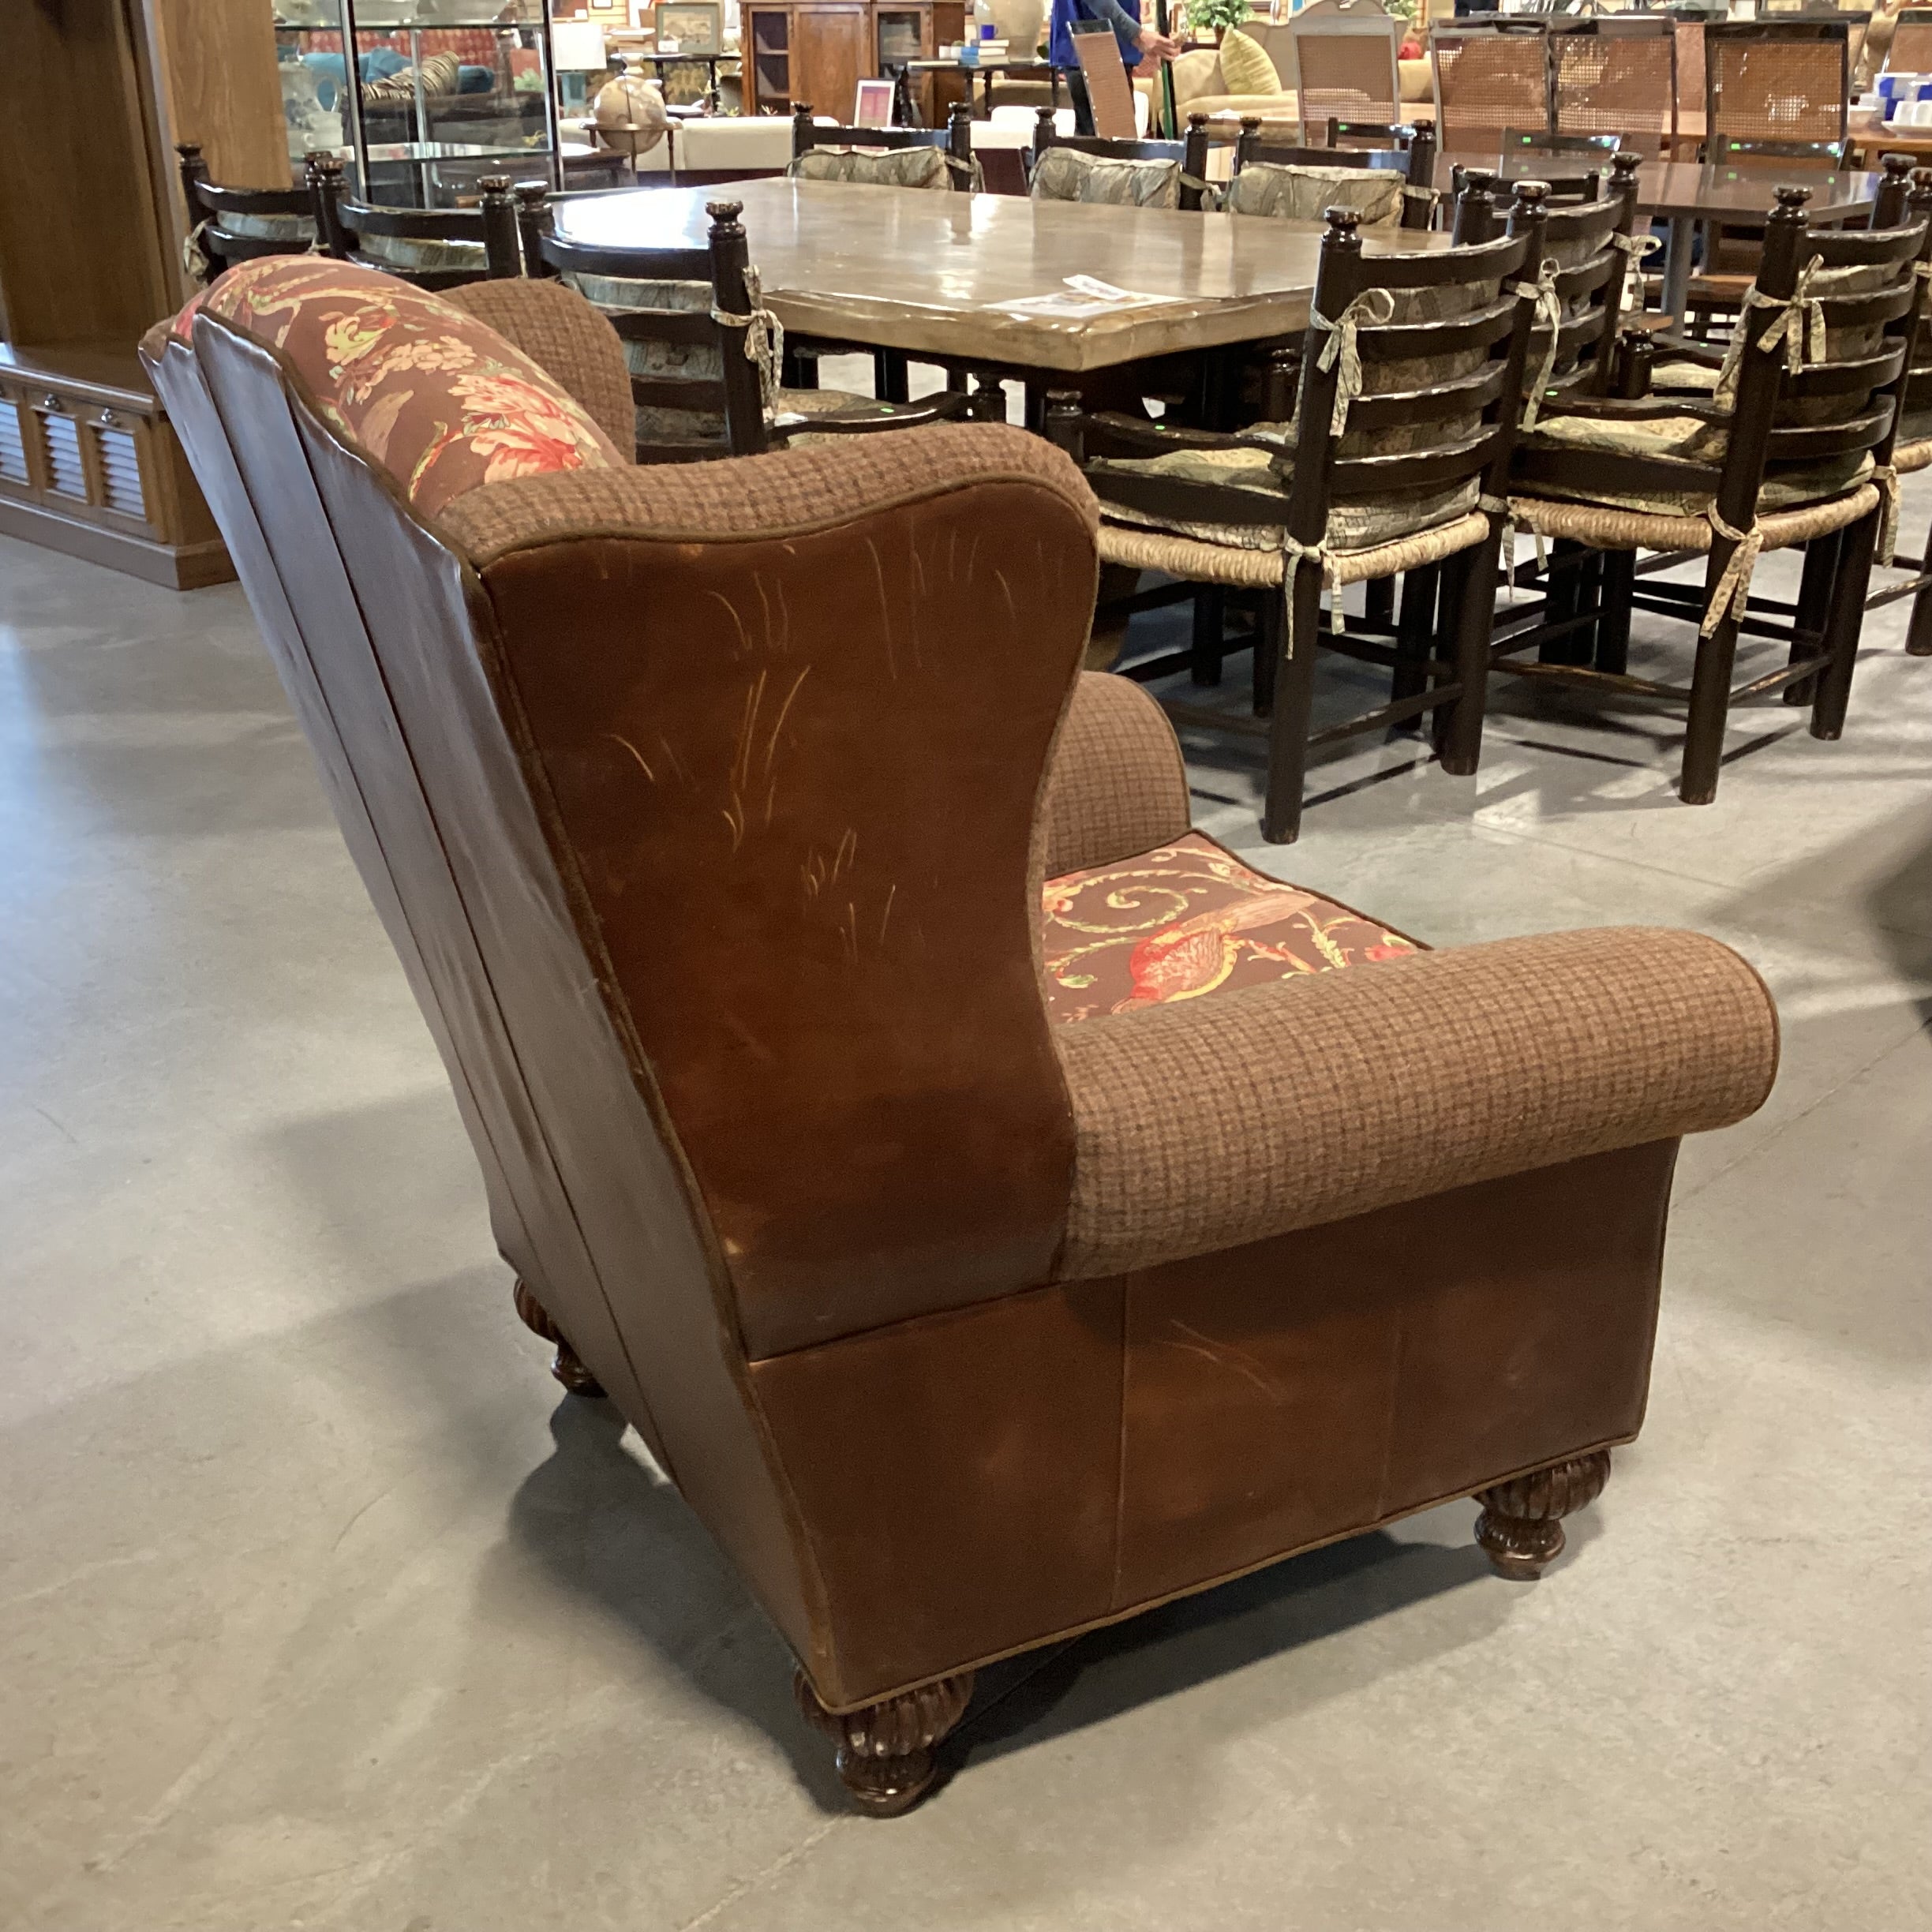 JM Paquet Leather Wool Plaid & Bird Linen Chair 39"x 34"x 44"